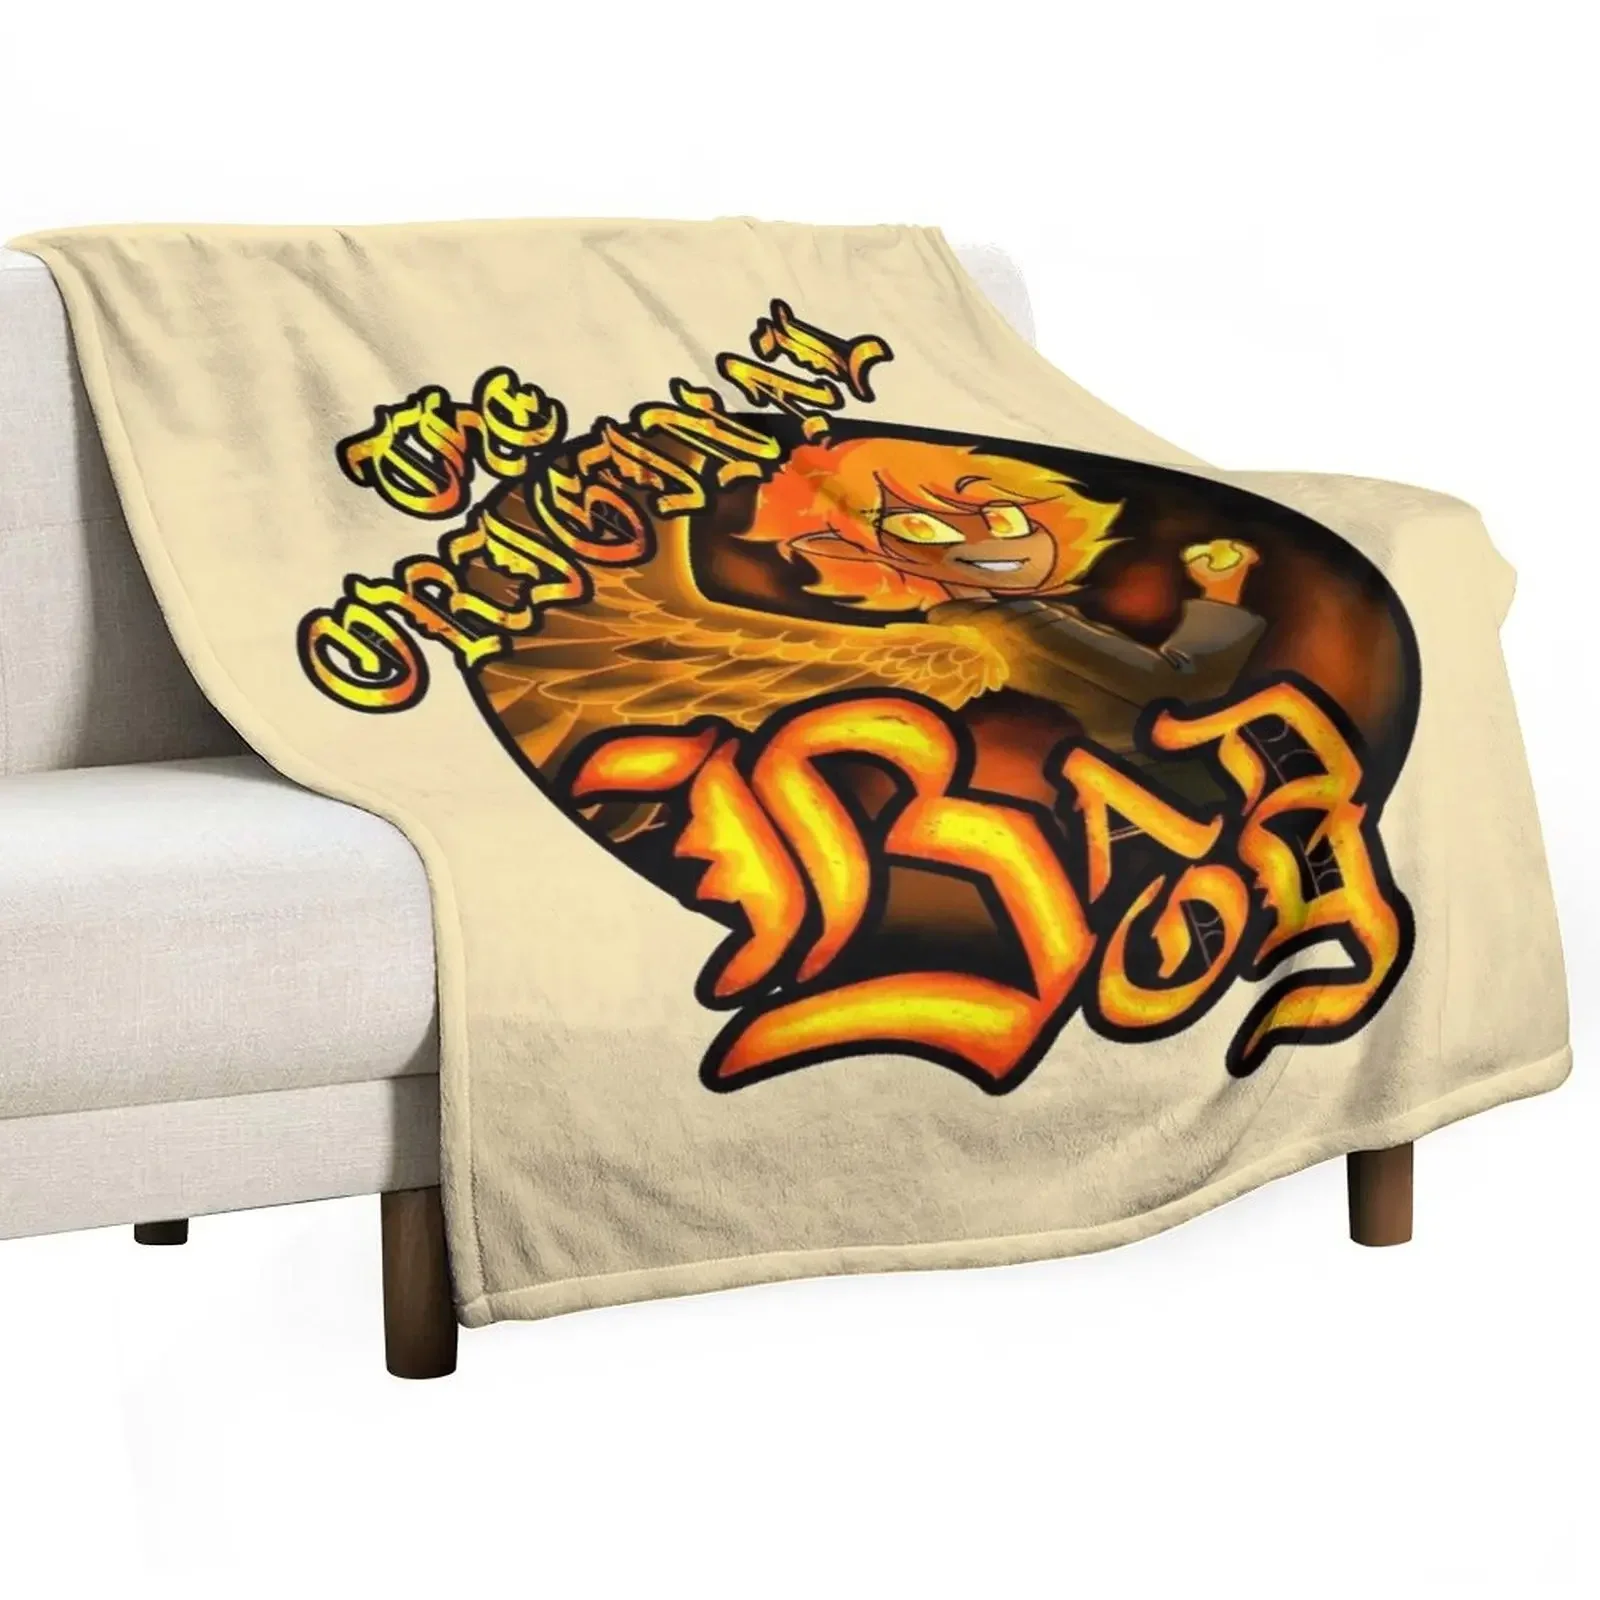 

Оригинальное одеяло Bad Boy, огромный диван, роскошные одеяла